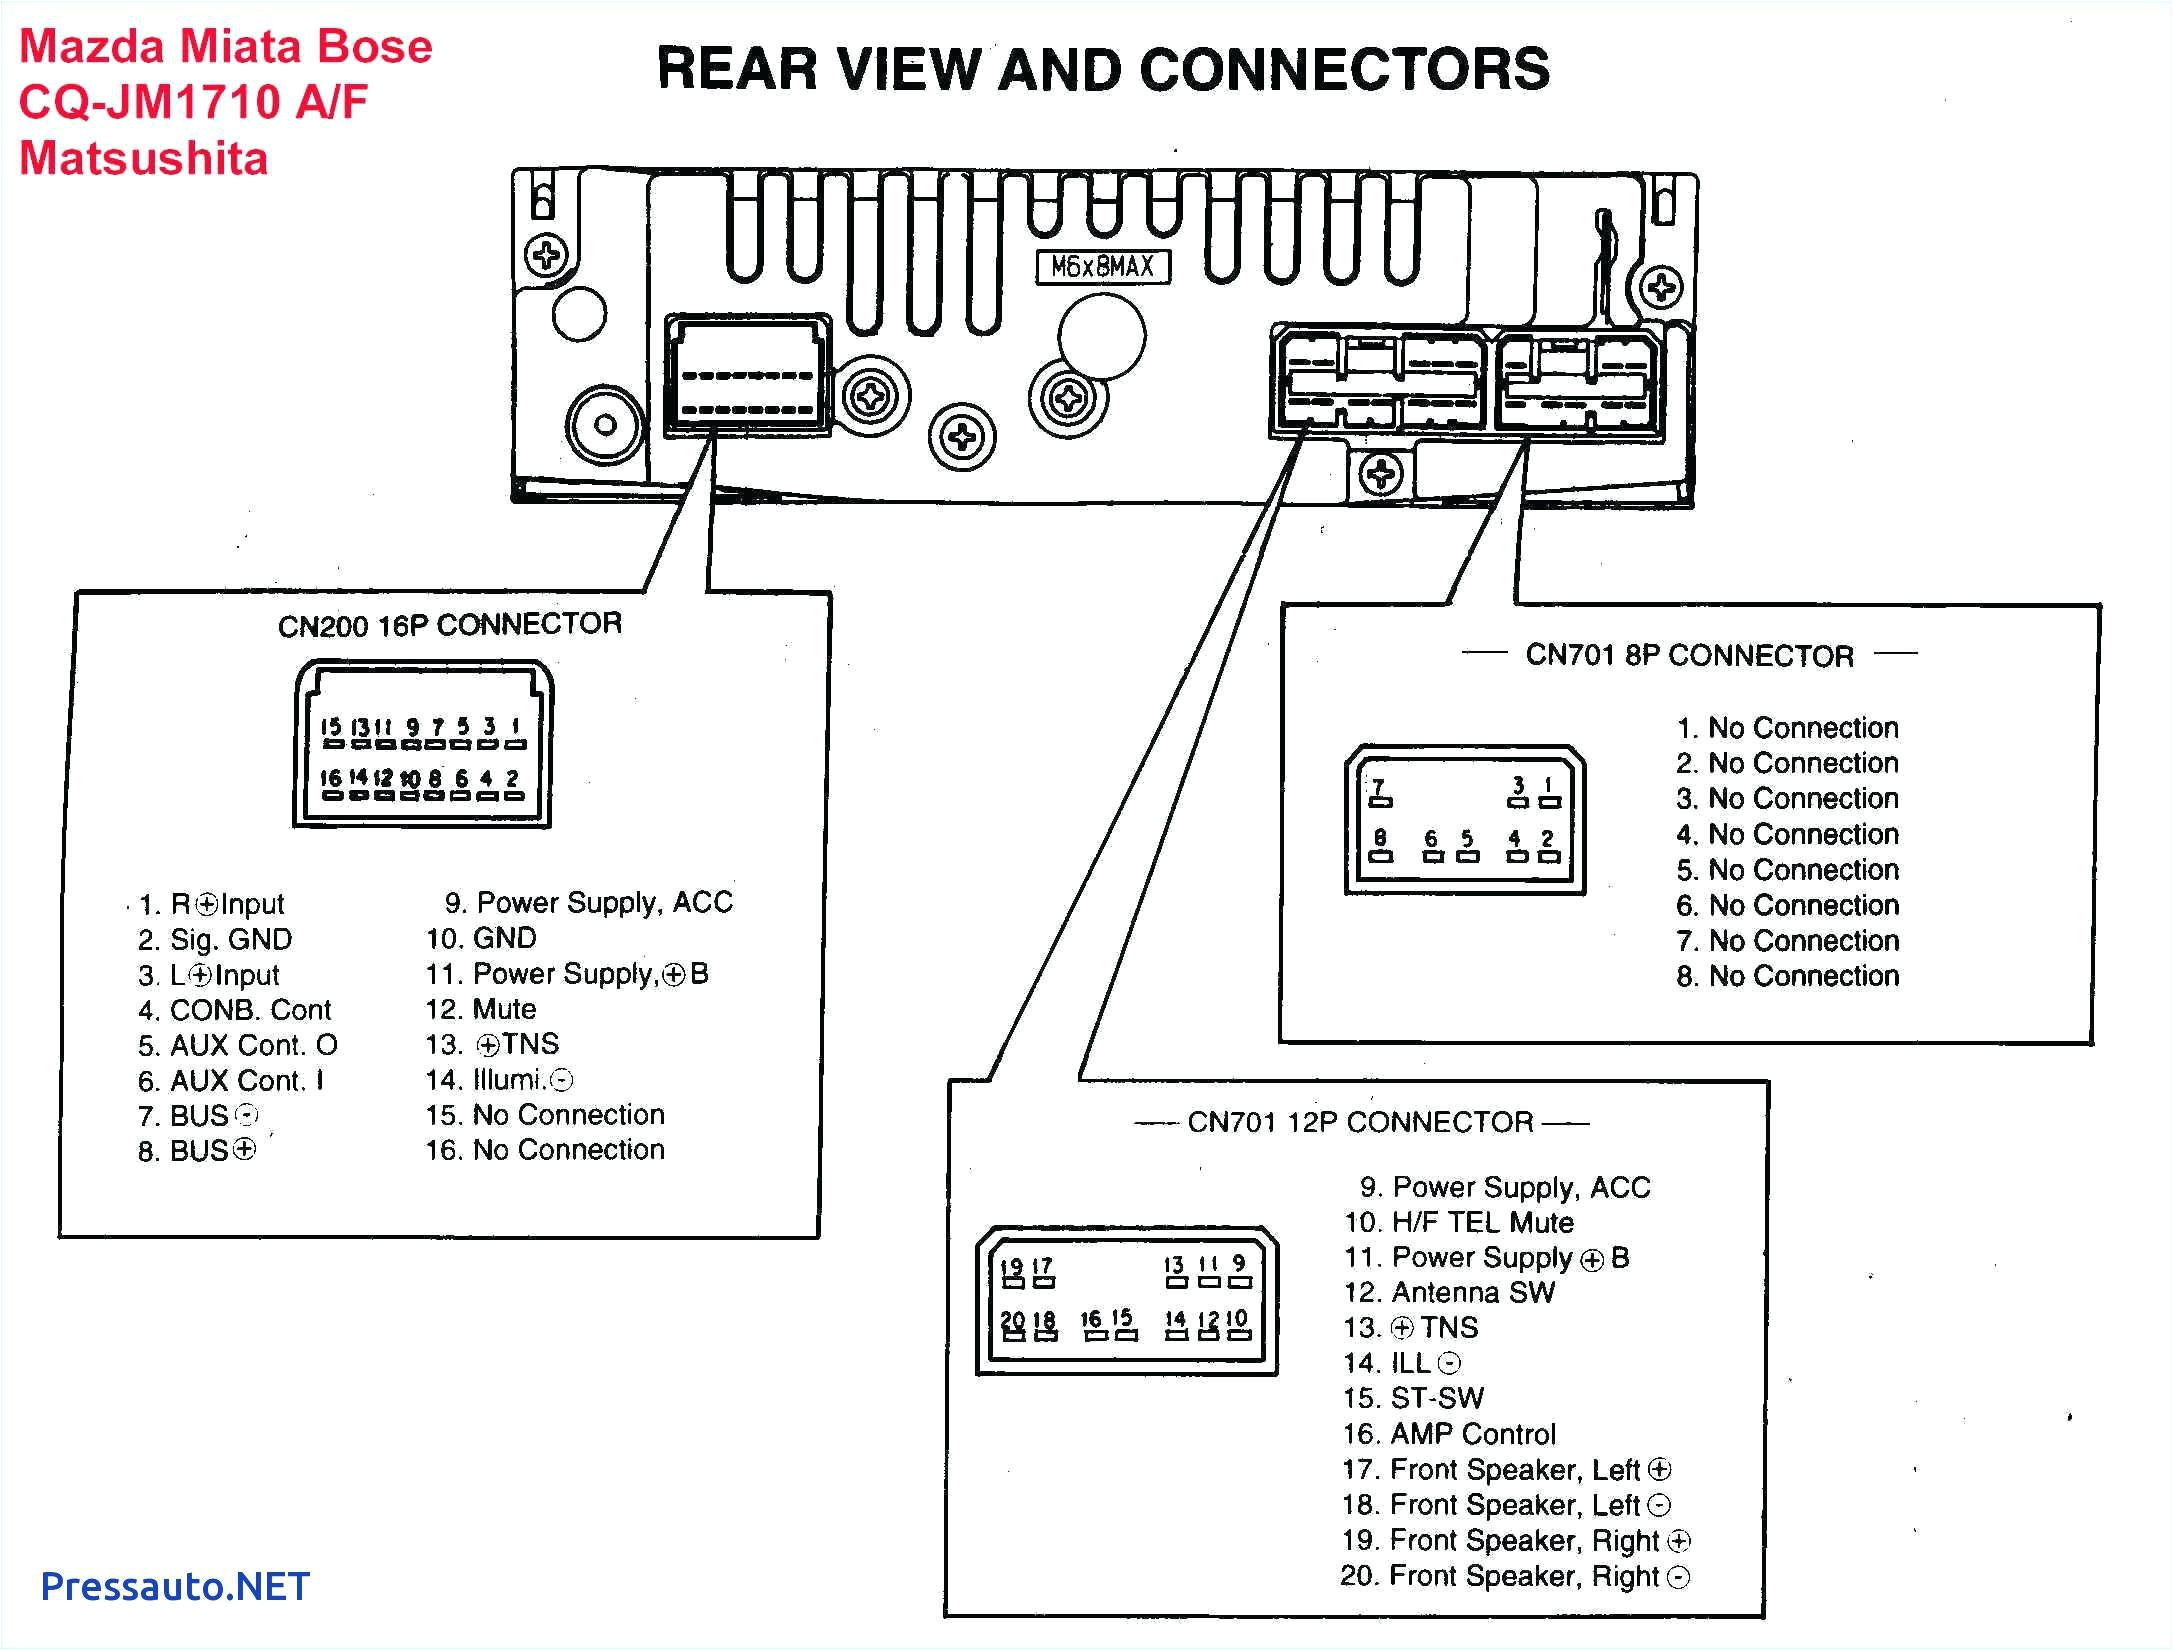 mazda navigation wiring diagram wiring diagrams bib mazda navigation wiring diagram